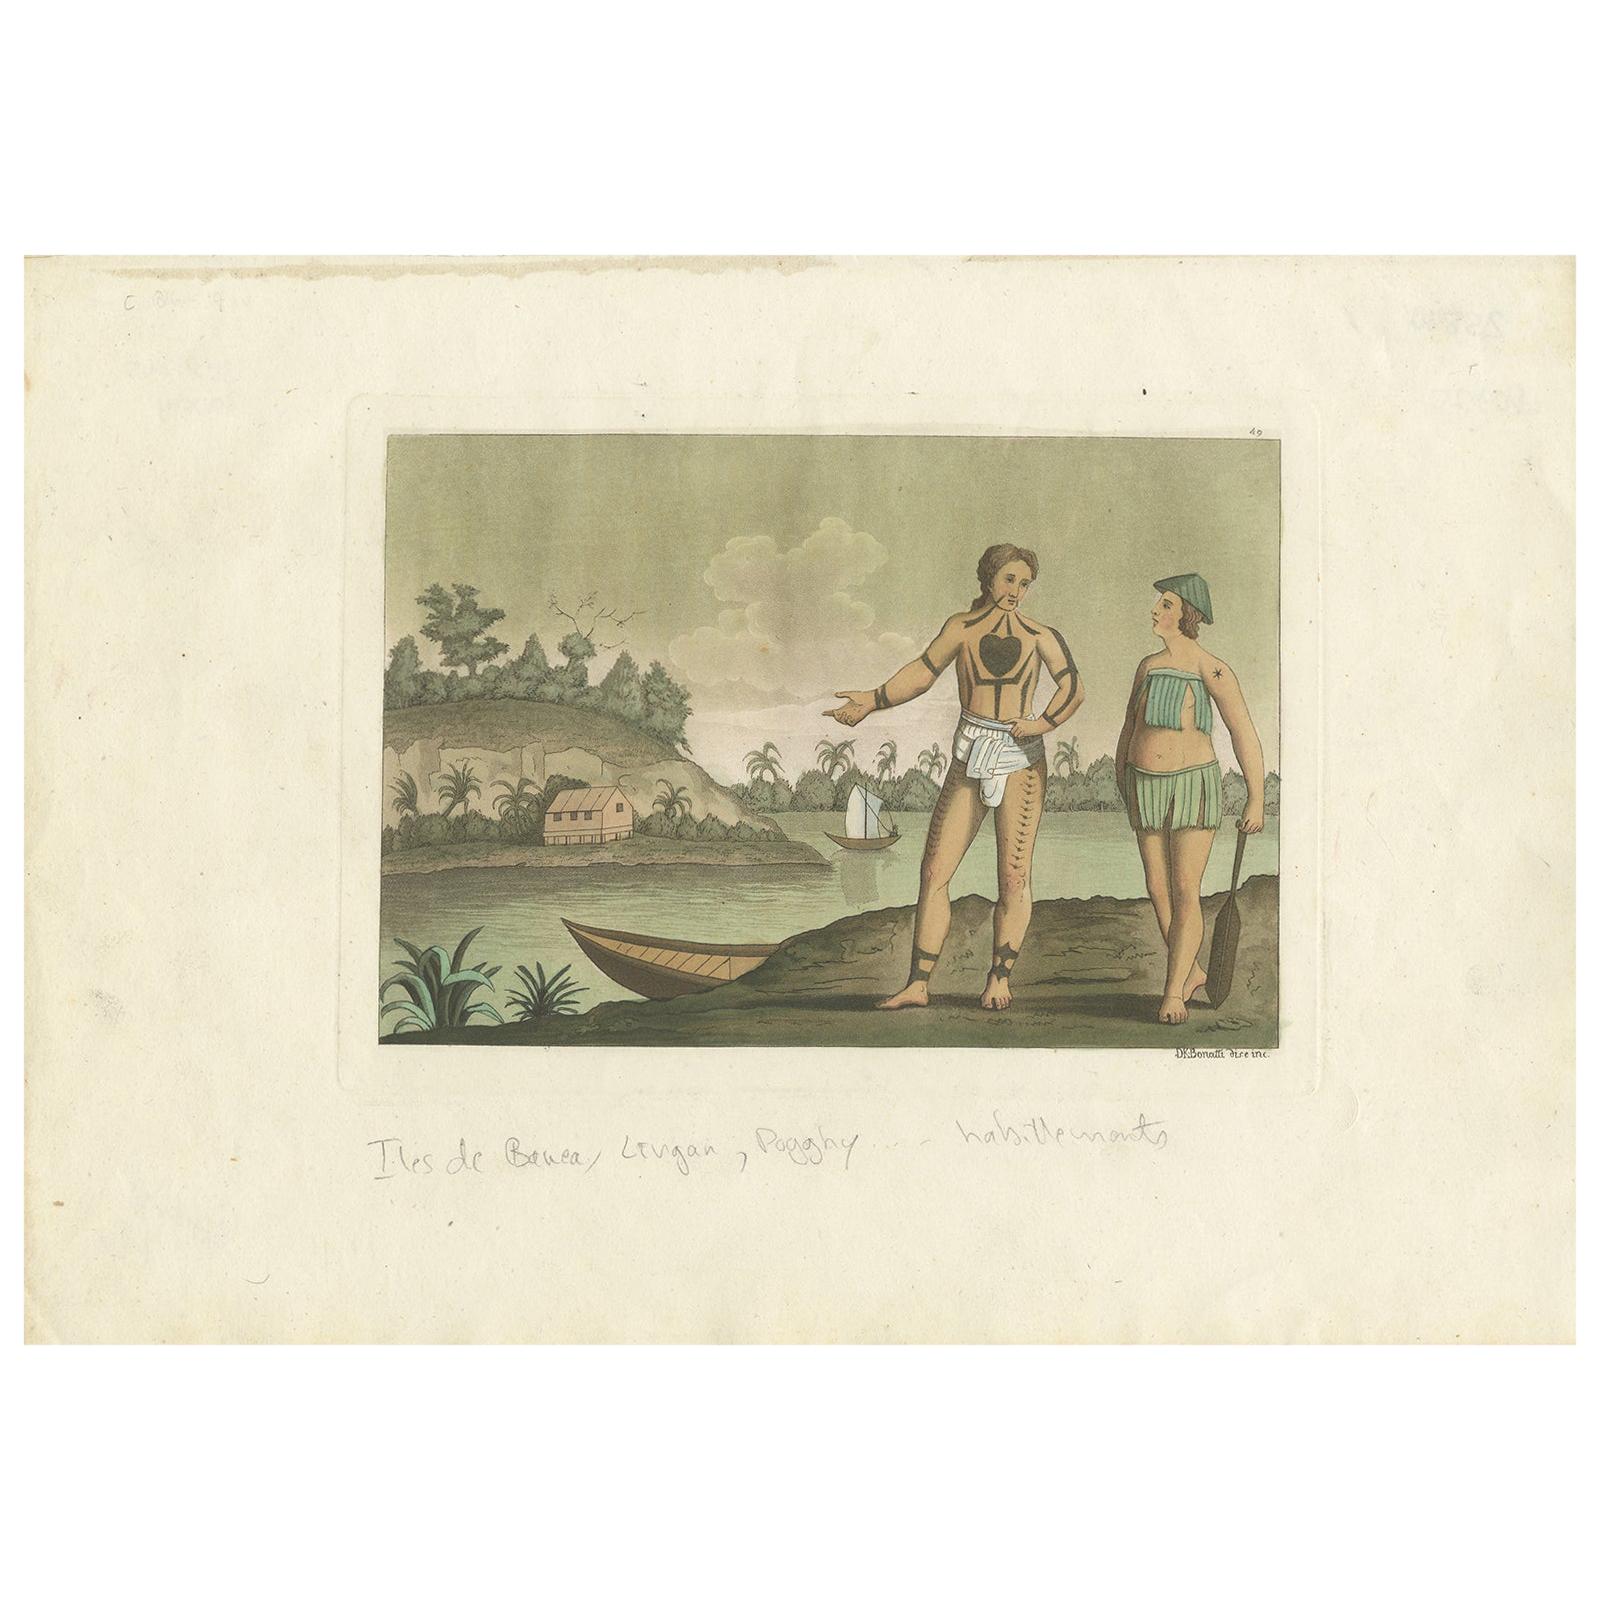 Old Handkolorierter antiker Druck von Bananenbewohnern mit Body Tattoos, 1827